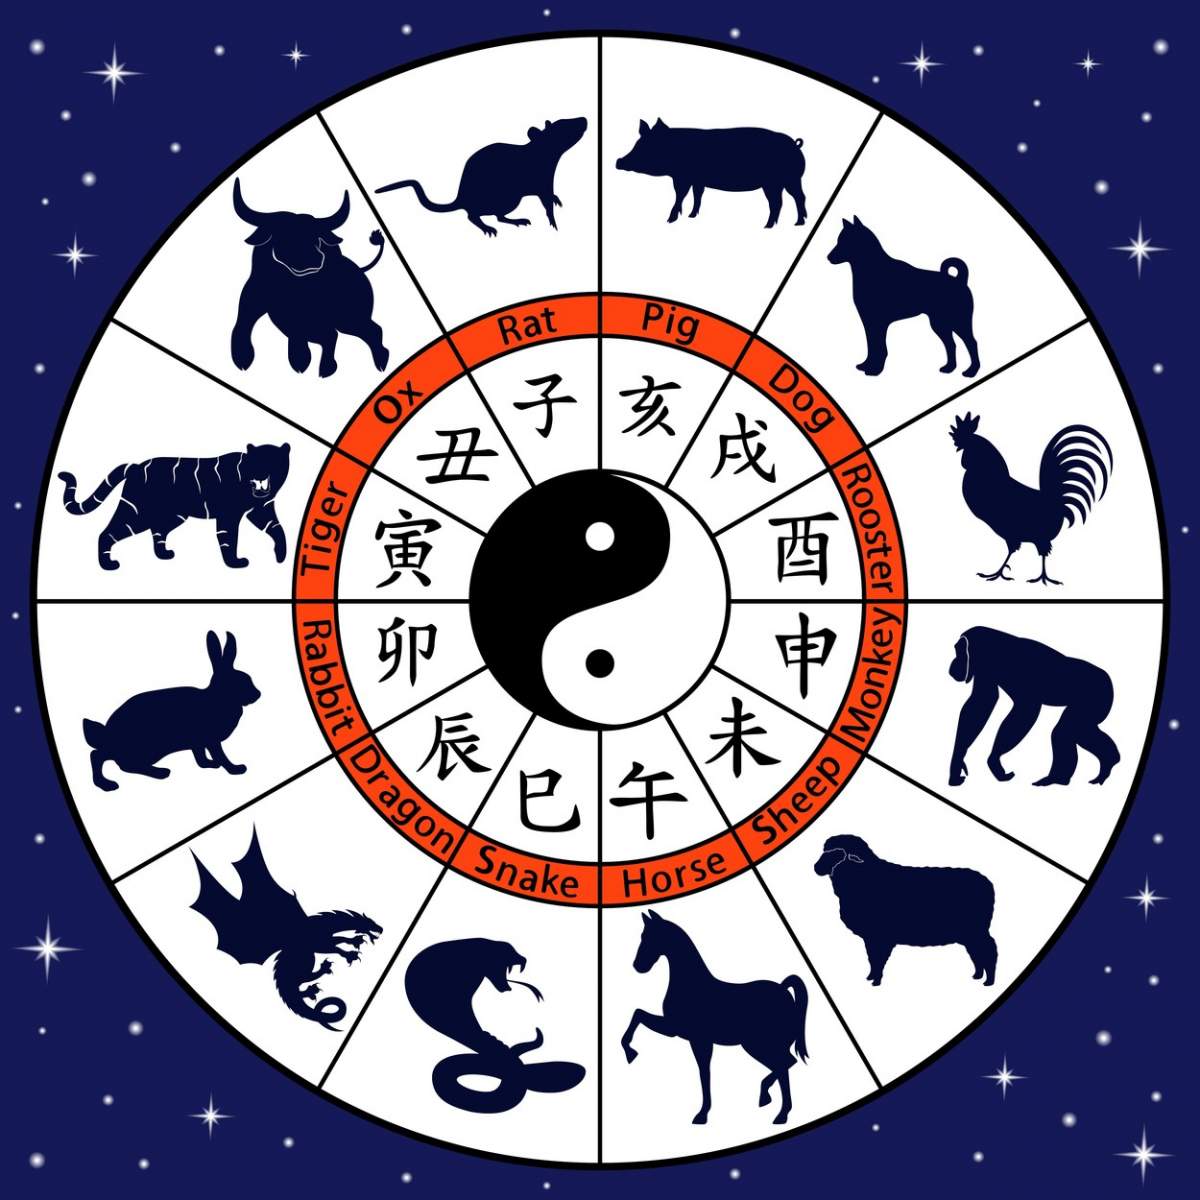 Horoscop chinezesc pentru vineri, 18 ianuarie 2020: Maimuțele simt nevoia de relaxare